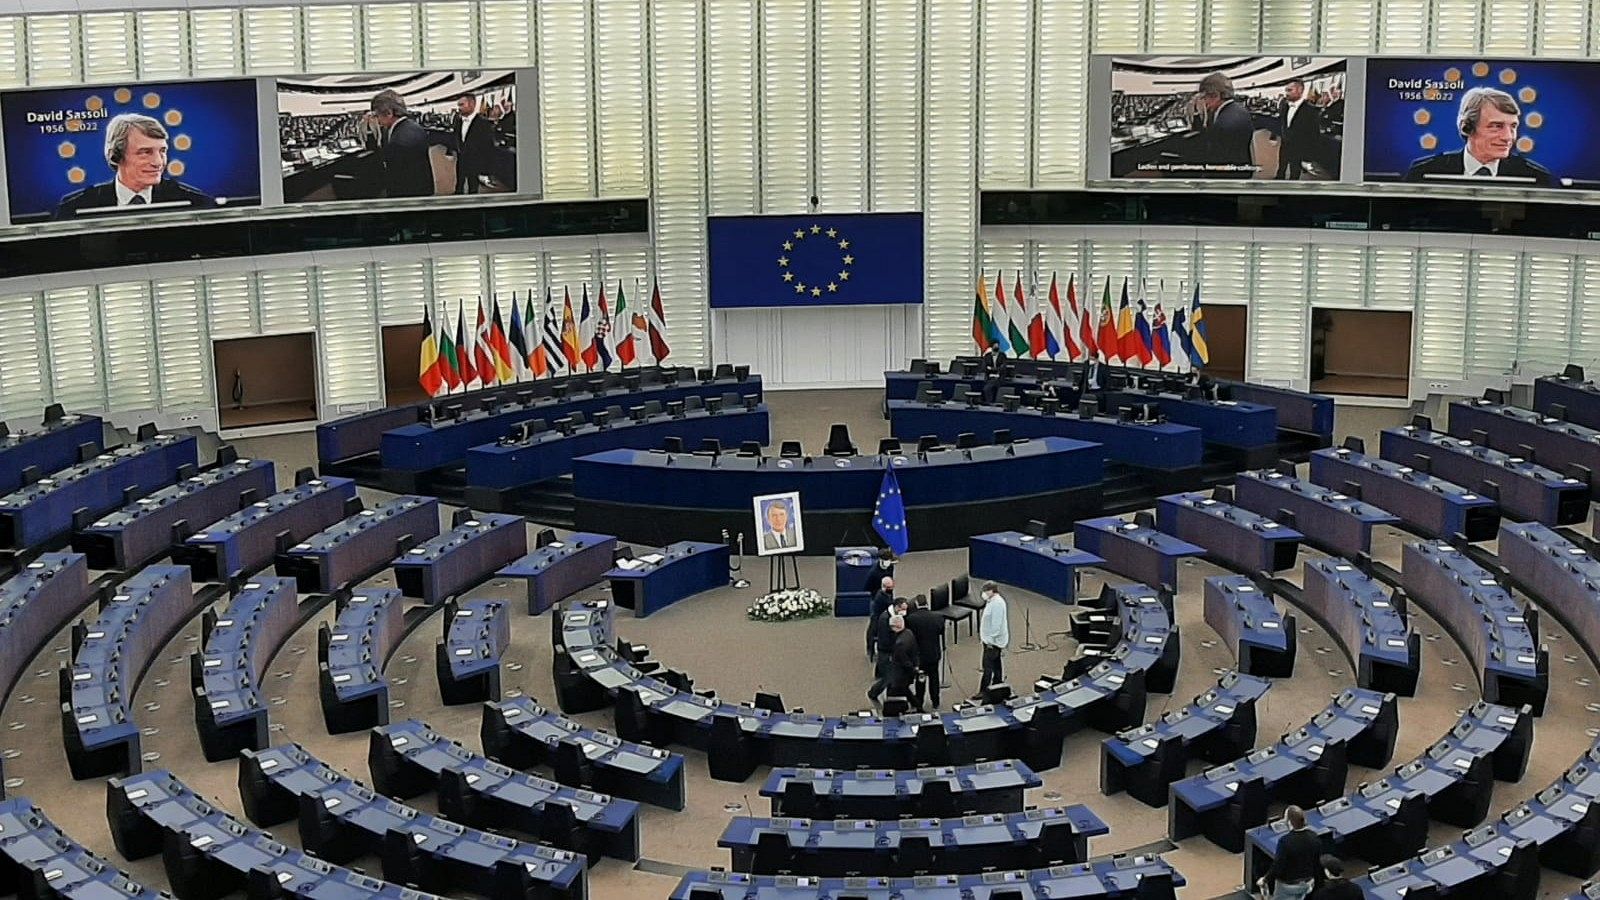 Parlamento Europeo vacío y mesa de condolencias con la foto de David Sasoli.